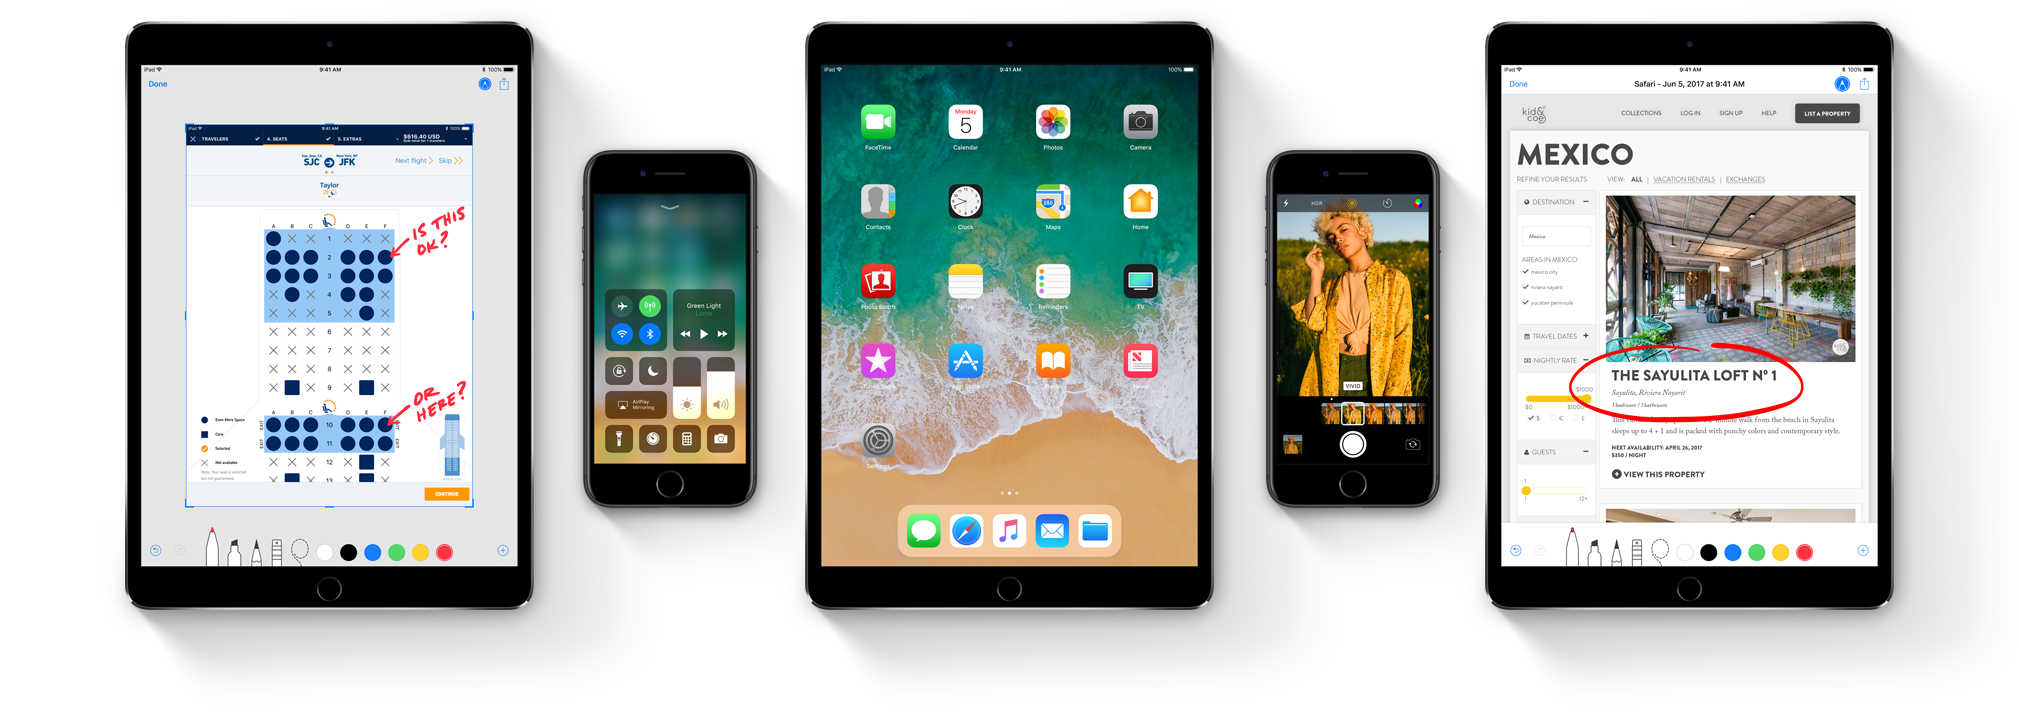 Apple tăng cường bảo mật khi kết nối các phụ kiện USB với iPhone, iPad trên iOS 11.3